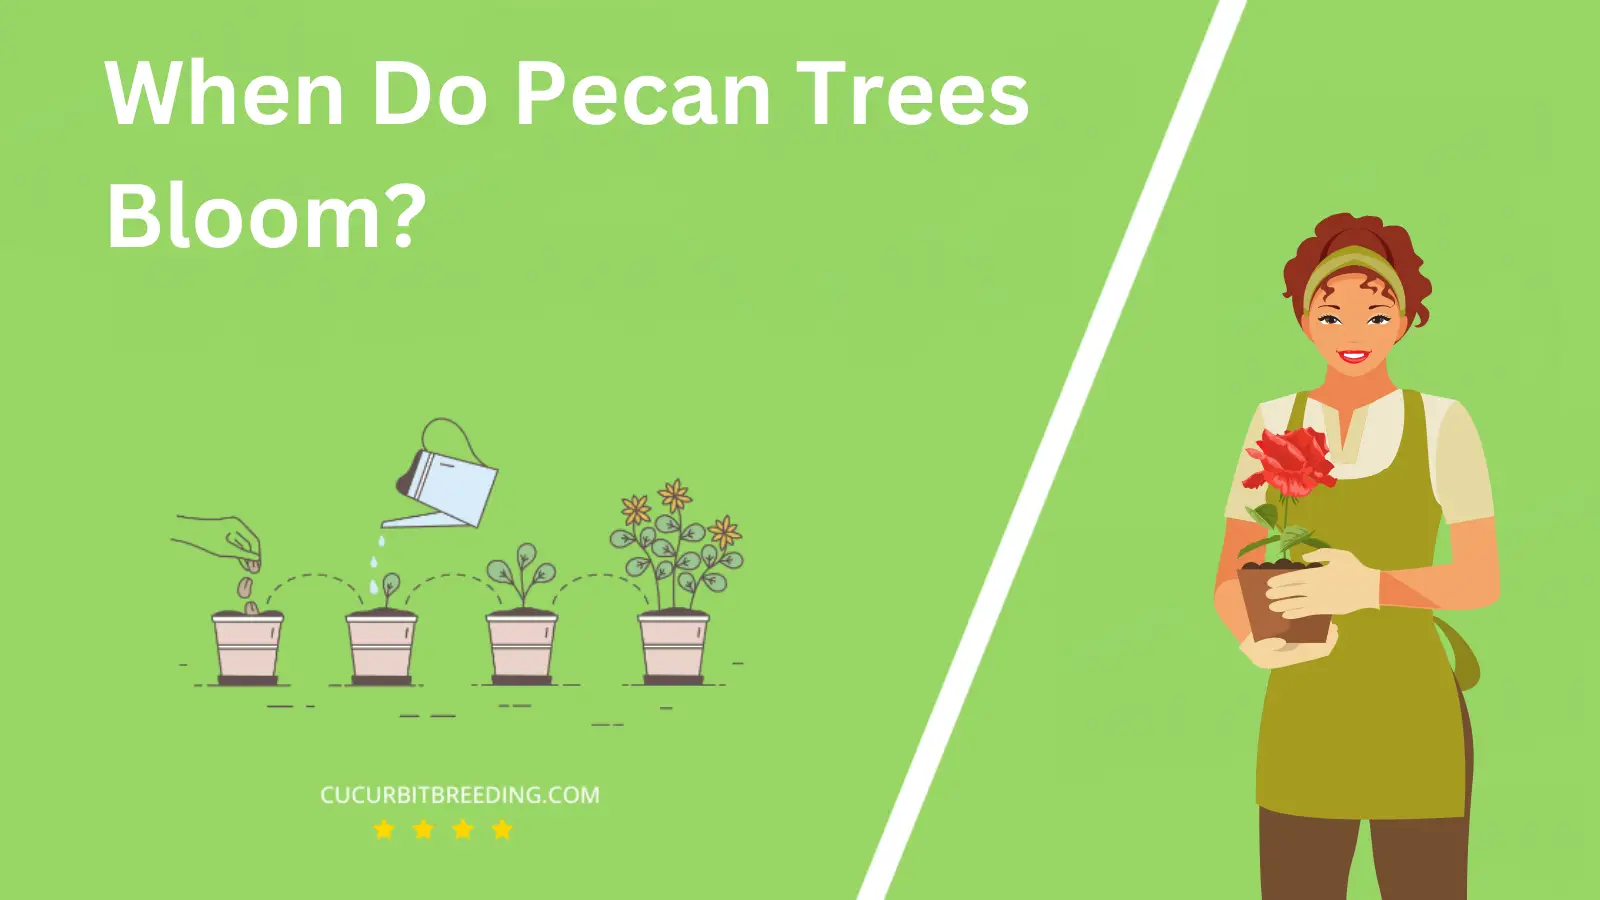 When Do Pecan Trees Bloom?